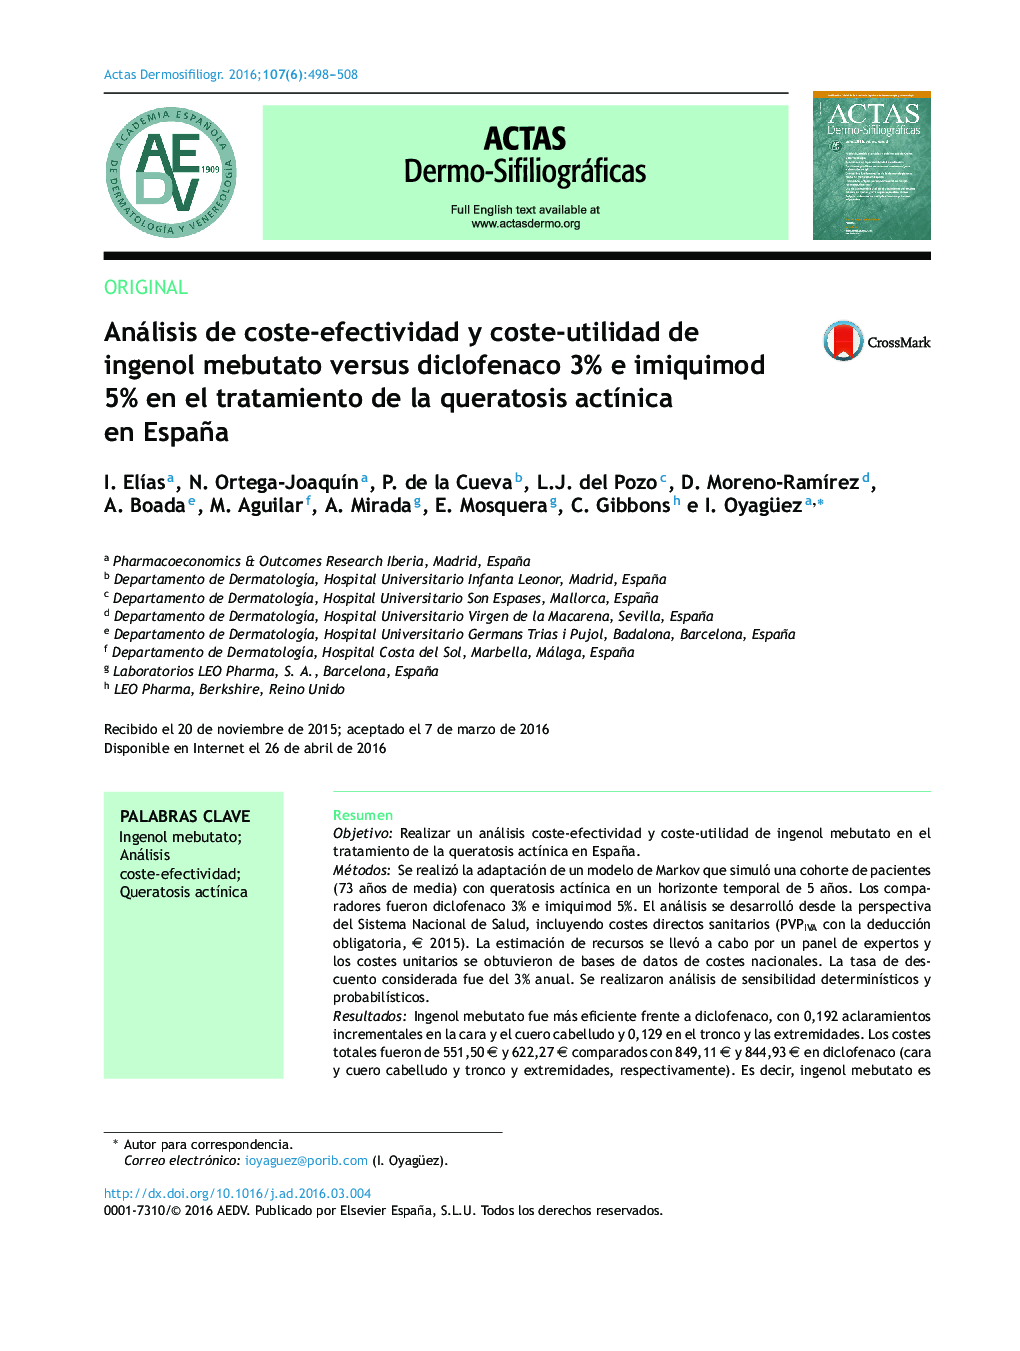 Análisis de coste-efectividad y coste-utilidad de ingenol mebutato versus diclofenaco 3% e imiquimod 5% en el tratamiento de la queratosis actínica en España